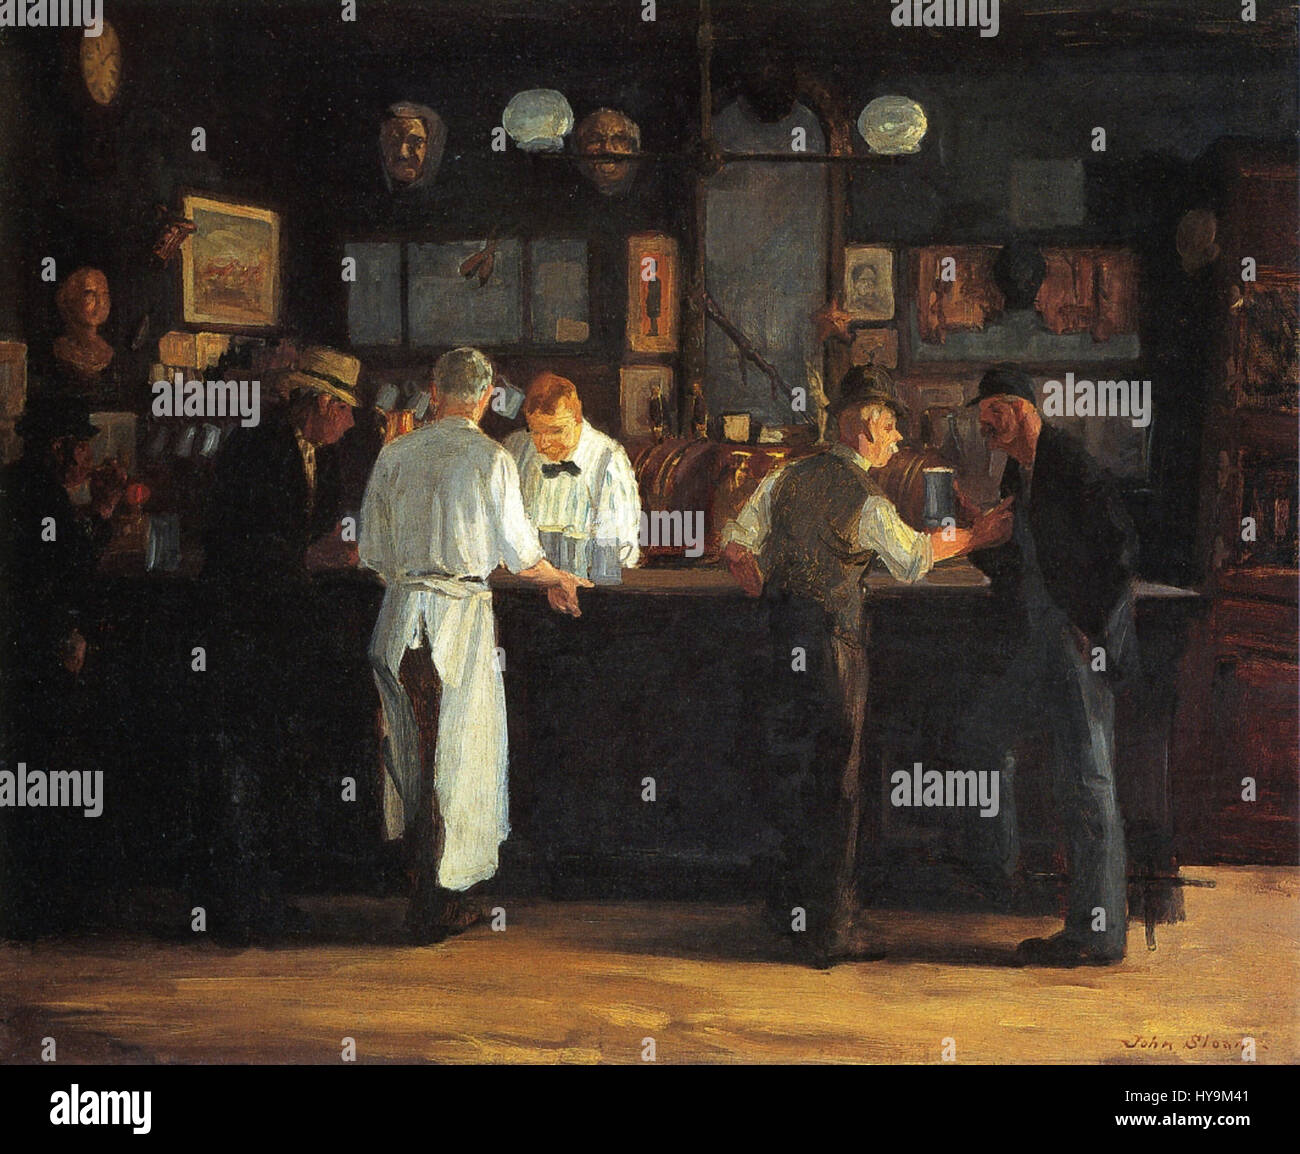 McSorley's Bar 1912 John Sloan Stock Photo